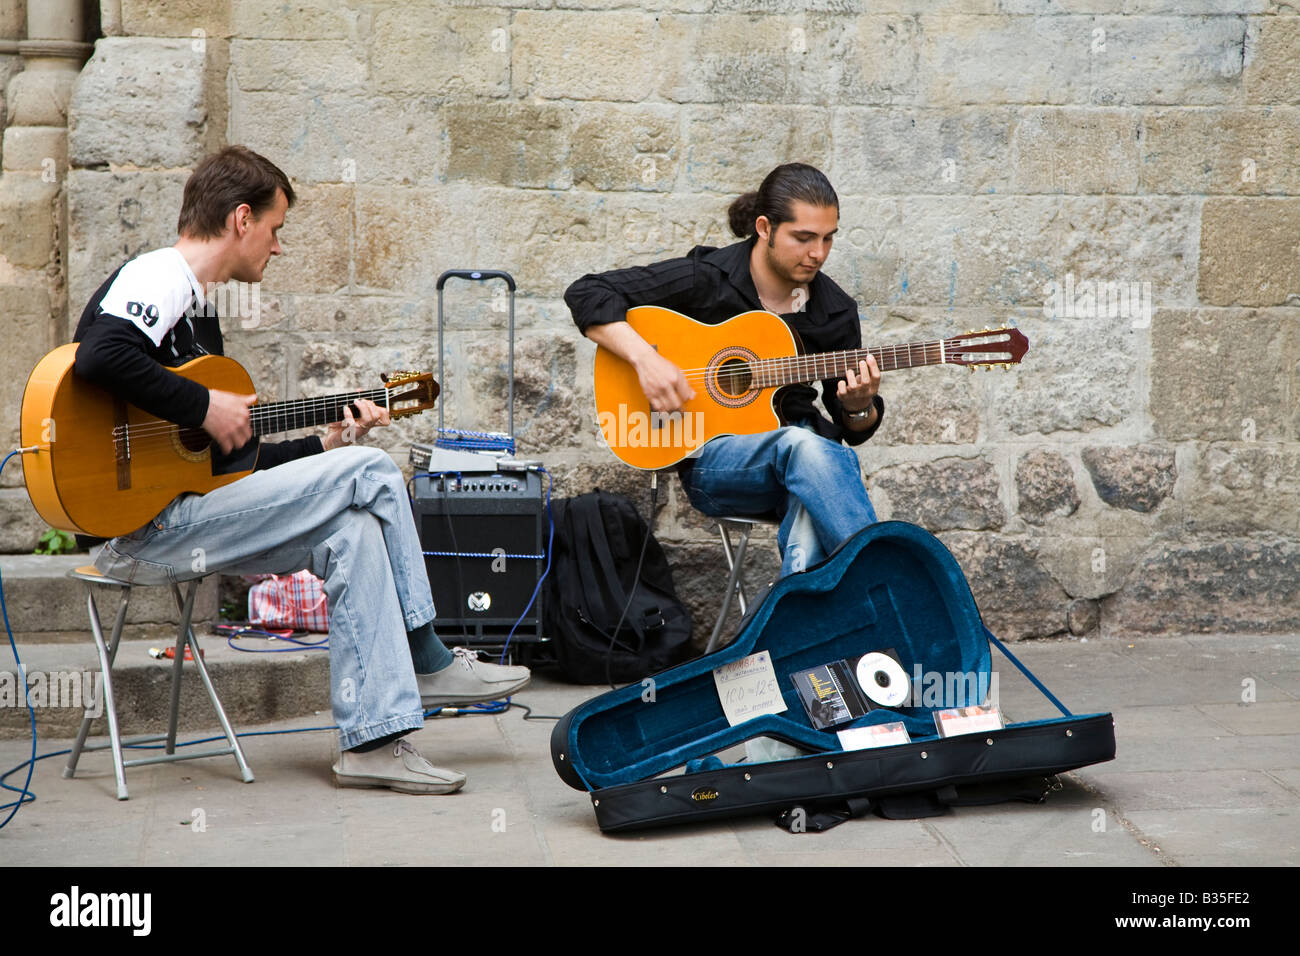 Spanien Barcelona zwei junge Erwachsene Männer spielen Akustikgitarre im Plaza mit offenen Gitarrenkoffer, Verkauf von Musik-CDs Stockfoto